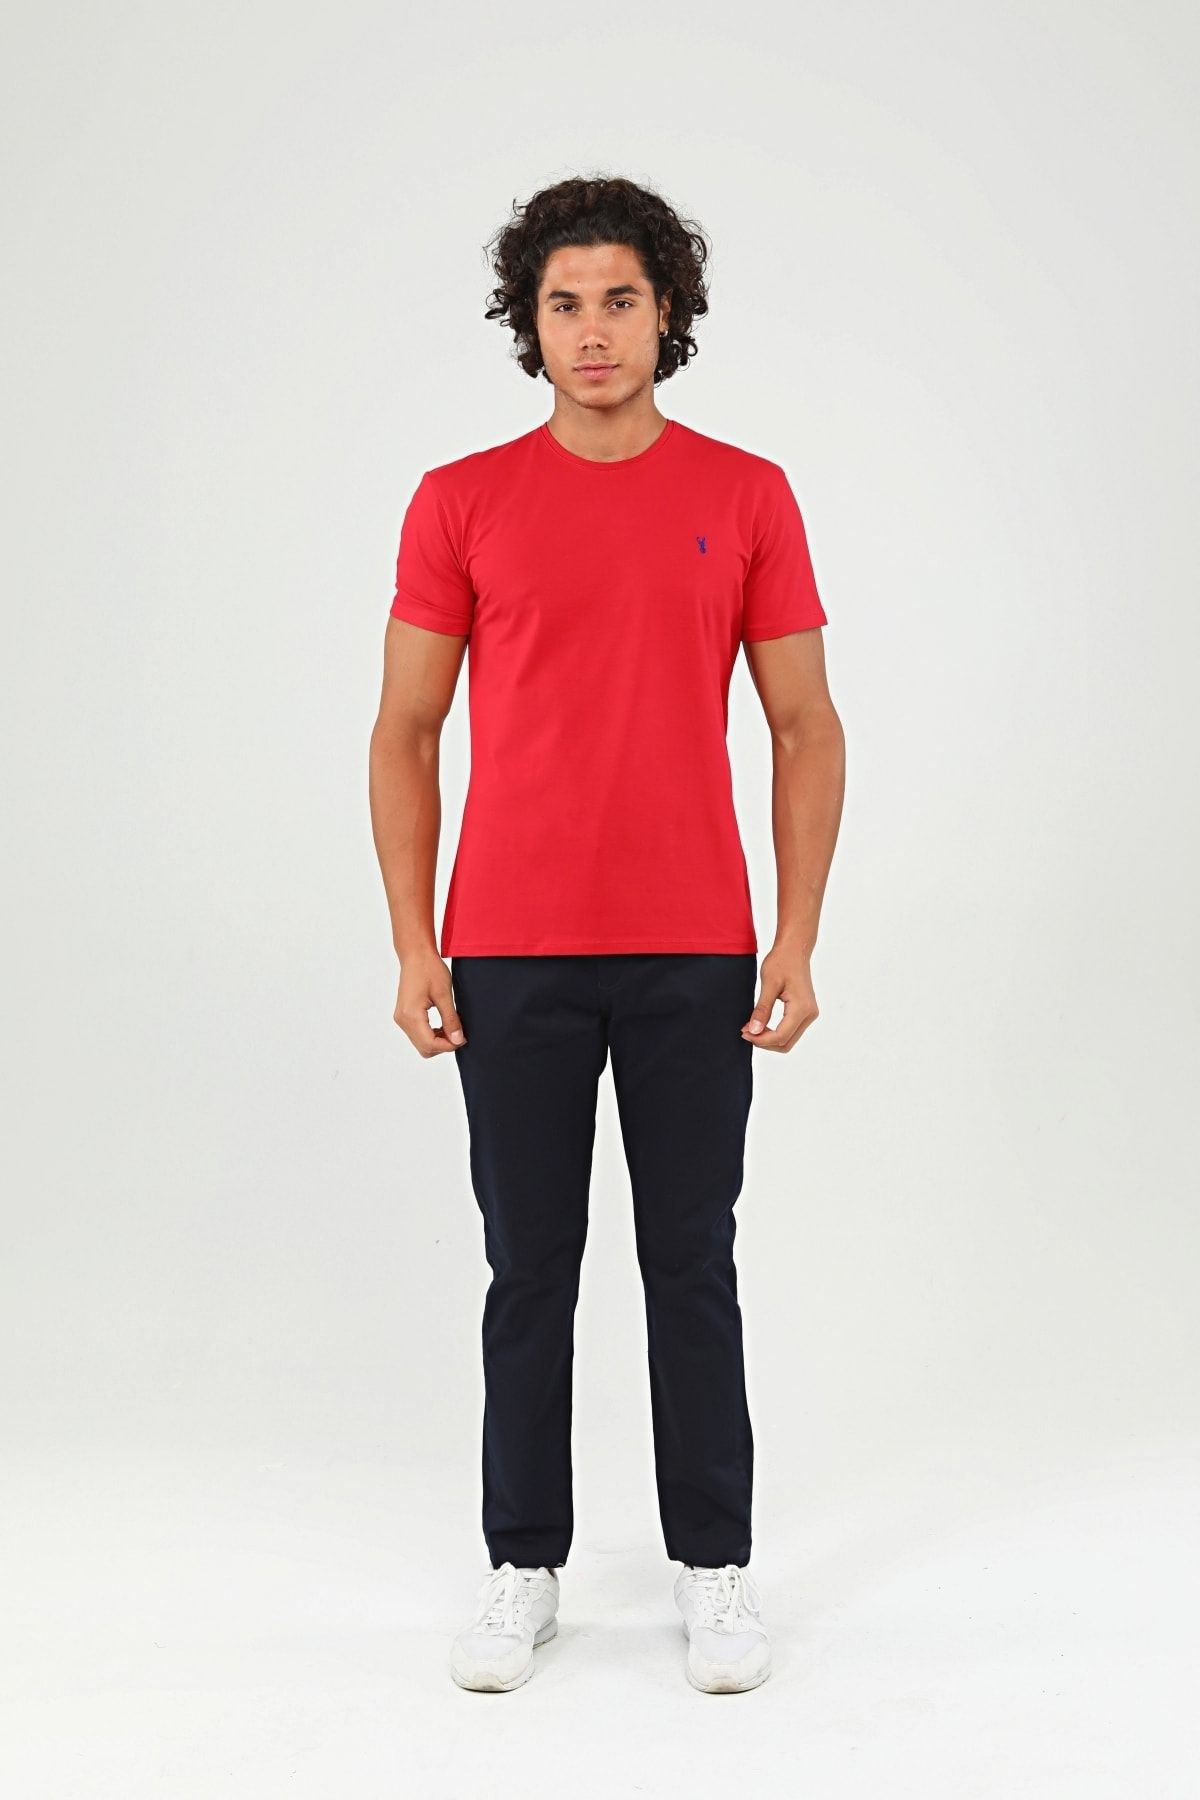 Ottomoda Kırmızı Basic Erkek Bisiklet Yaka Kısa Kollu T-shirt, Ot-bt-21001